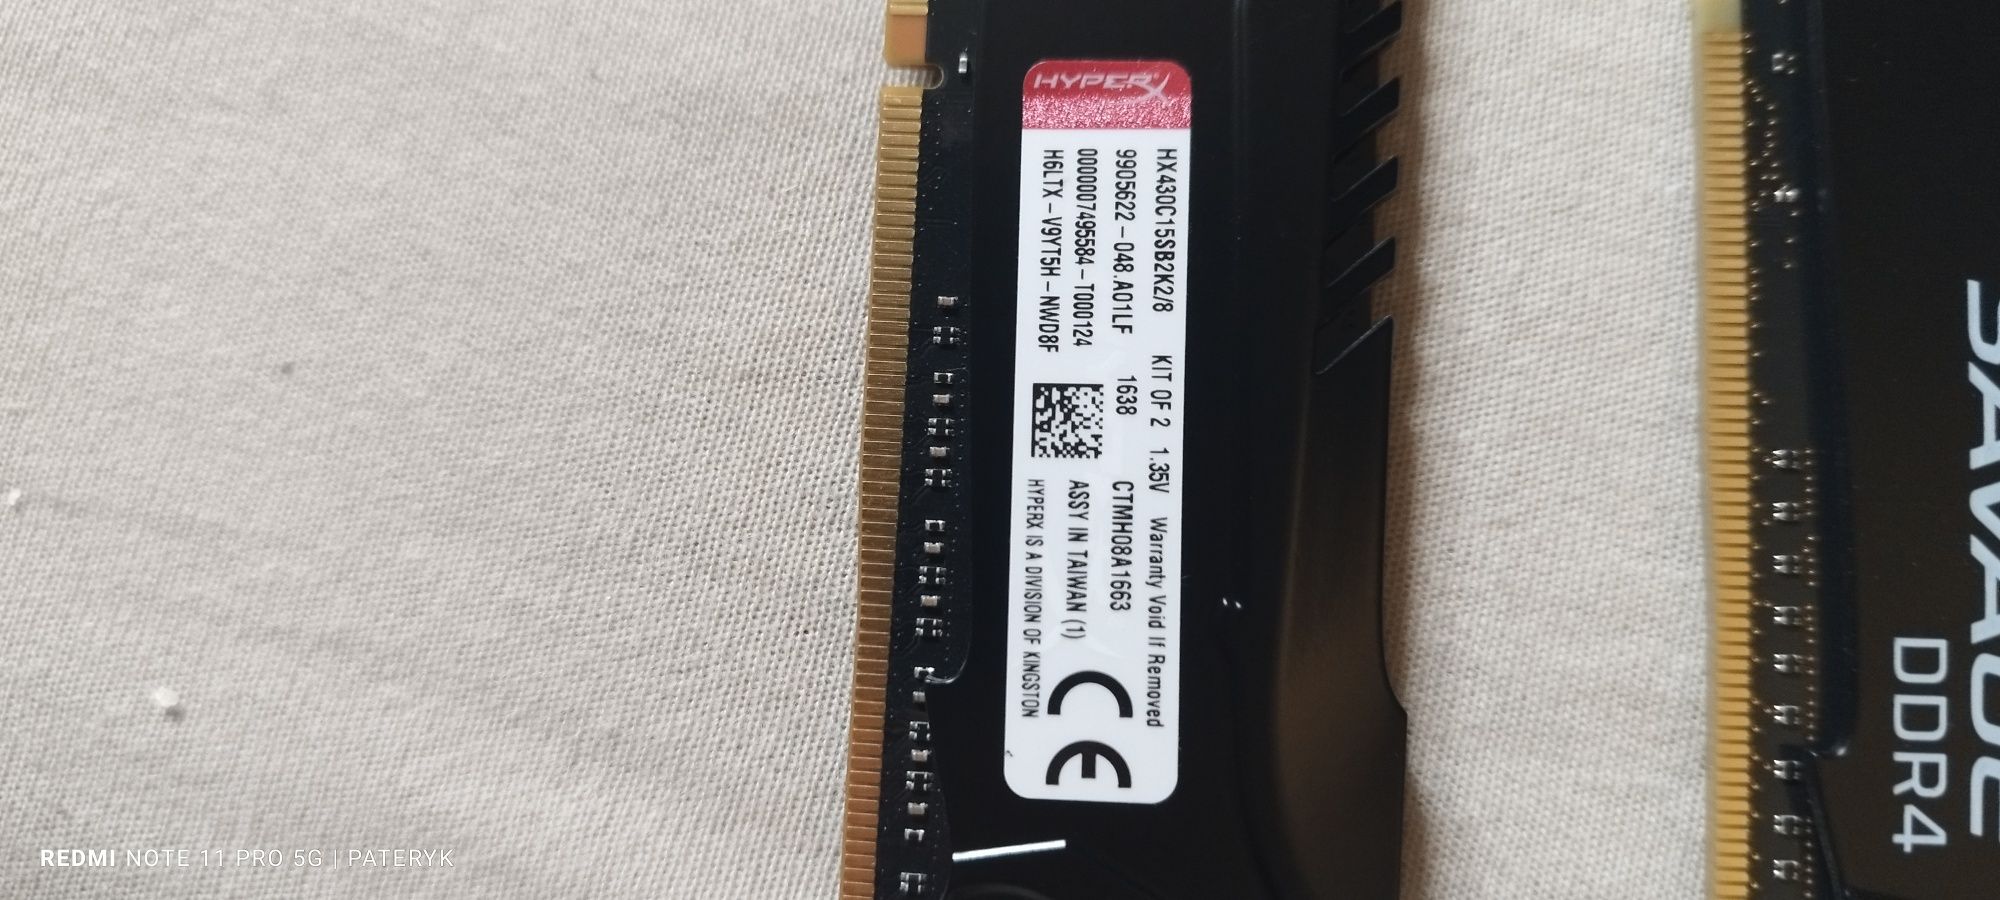 Pamięć ram HyperX savage DDR4 4x4gb 16gb 2800mhz